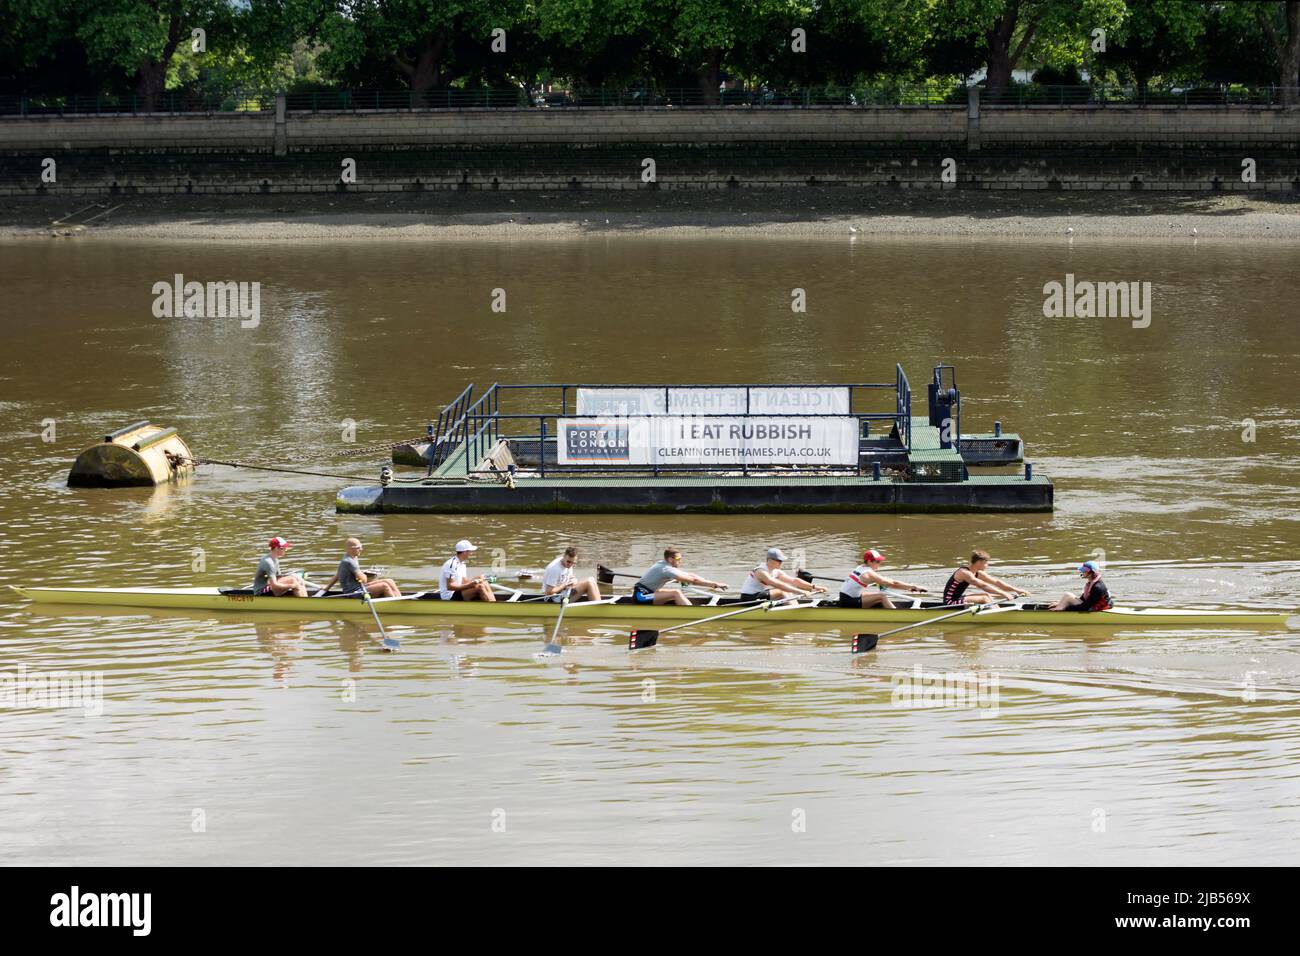 en el río támesis en putney, un remo ocho pasan por un puerto de la autoridad londinense barcaza con una pancarta de basura i eat, parte de una campaña de eliminación de basura. Foto de stock